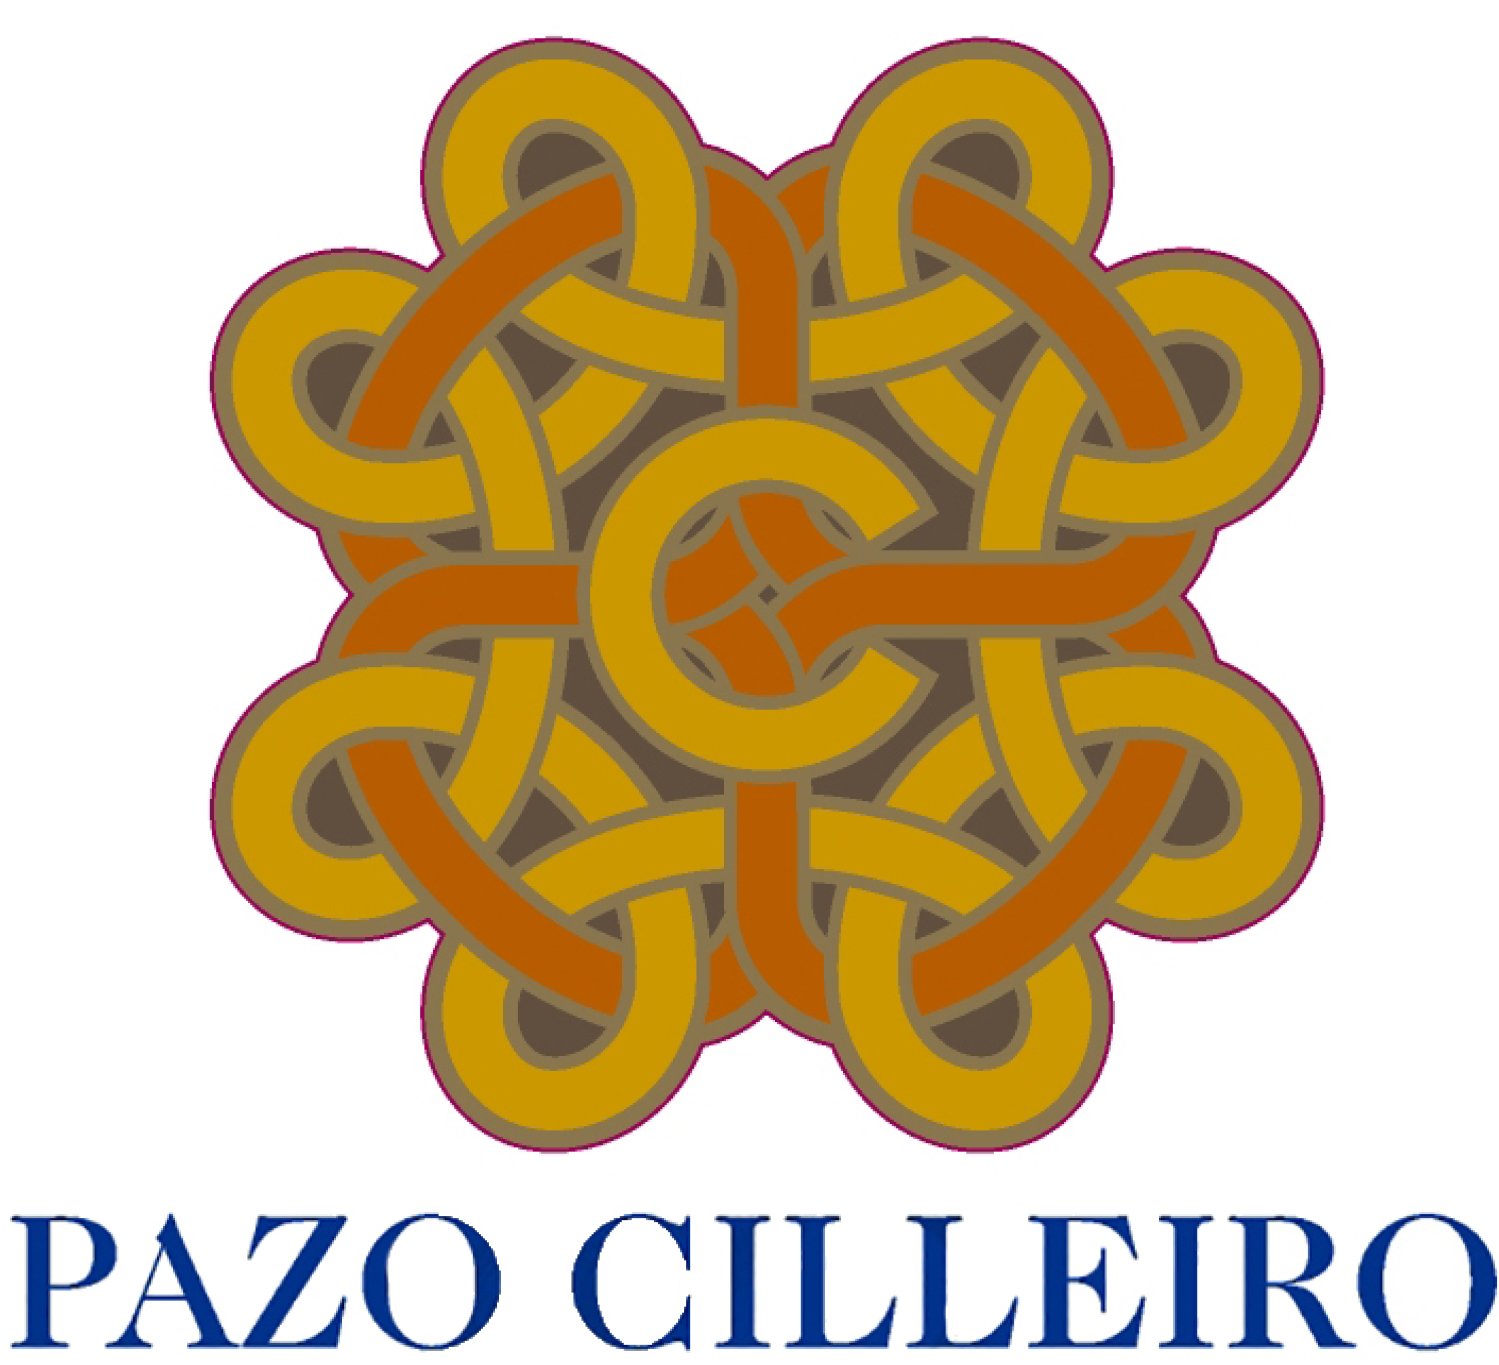 Pazo_Cilleiro_logo.jpeg